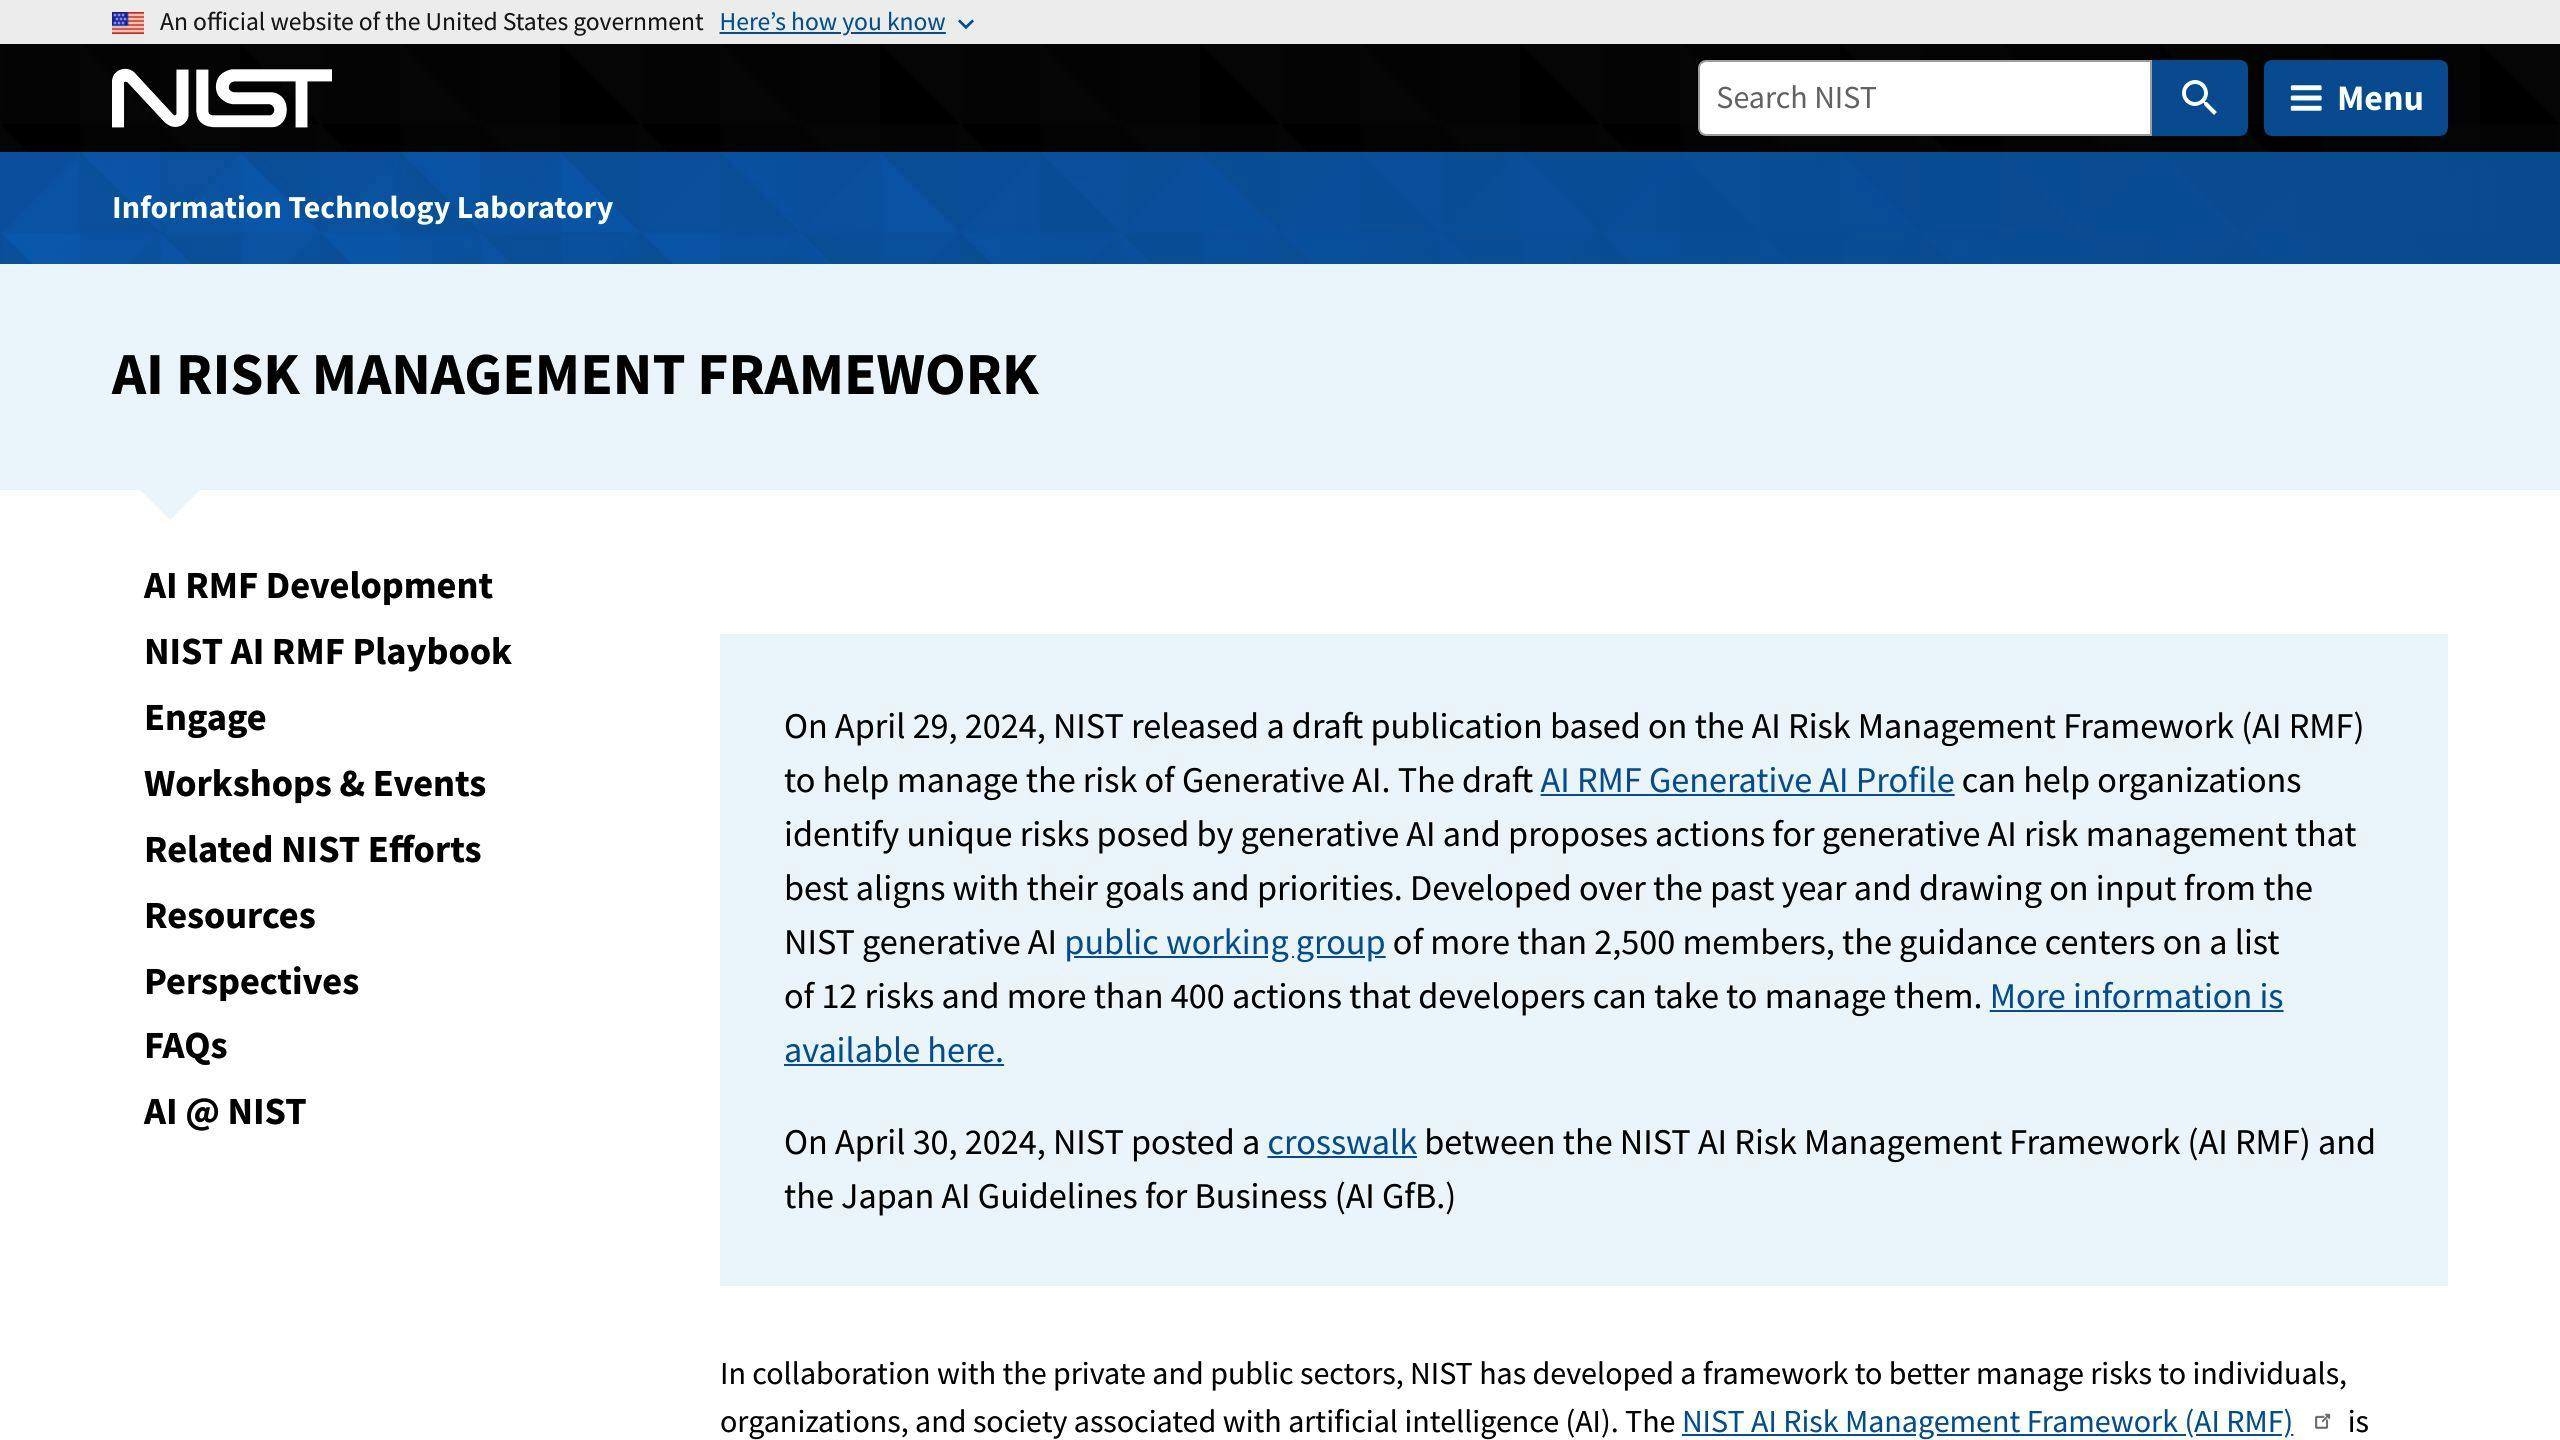 NIST AI Risk Management Framework